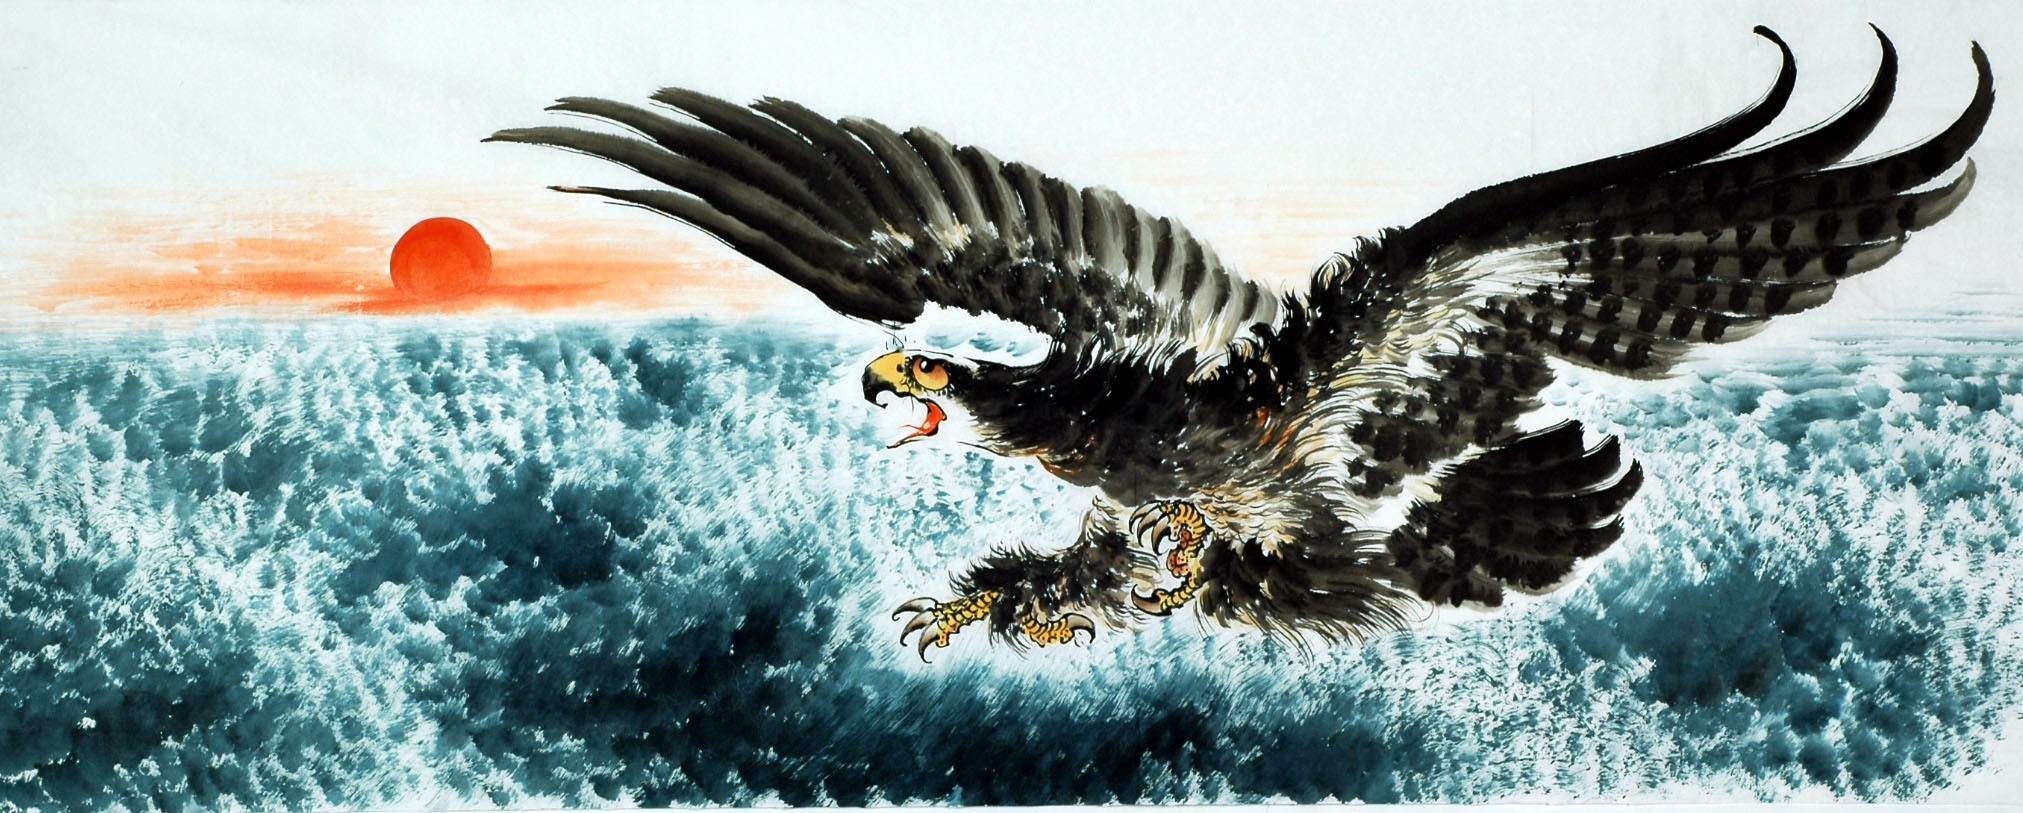 Chinese Eagle Painting - CNAG007798